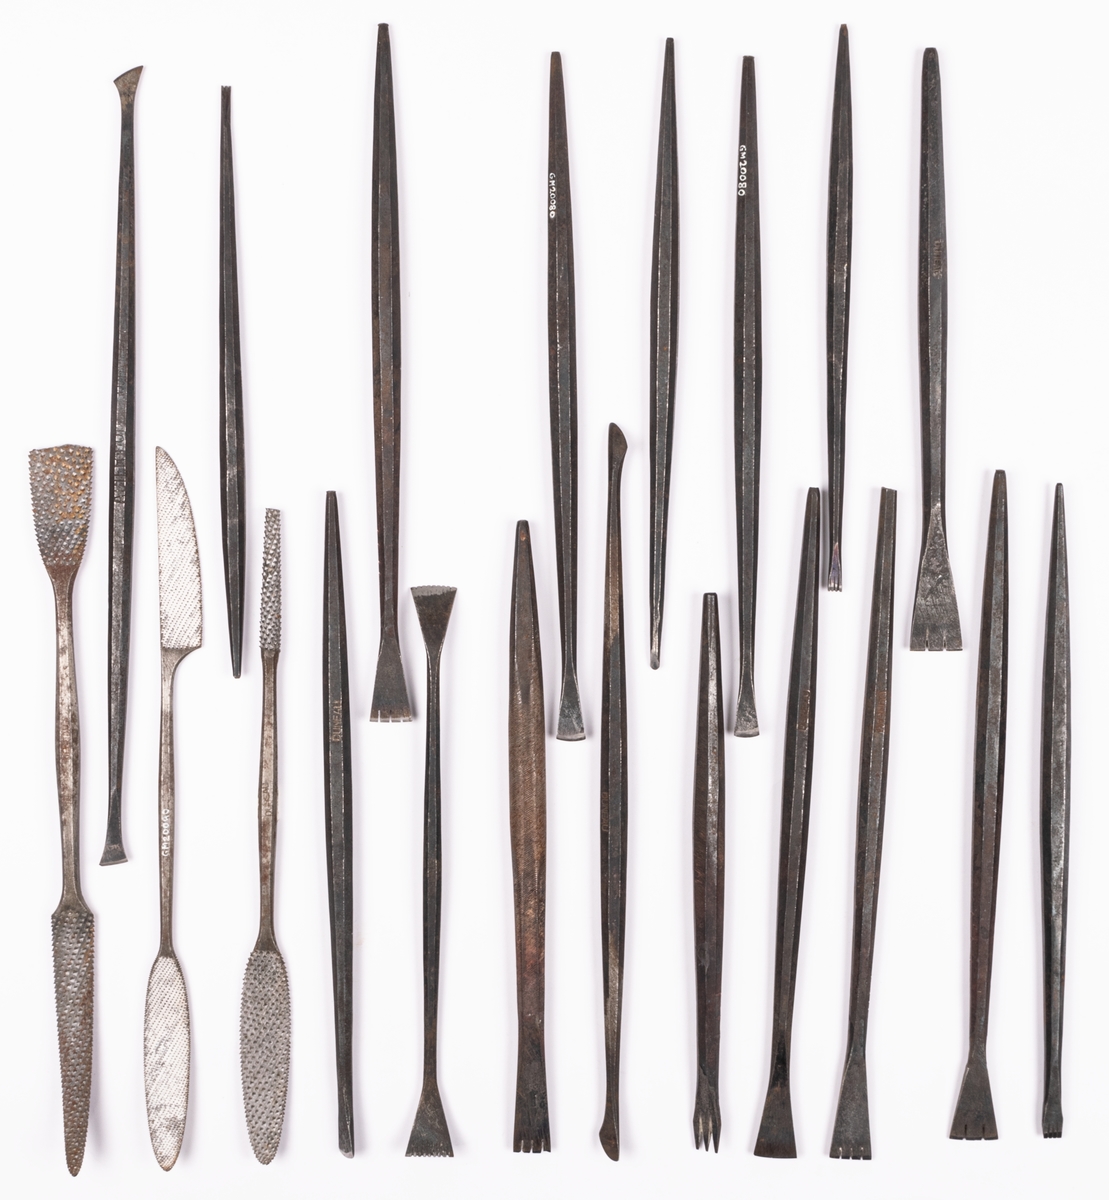 Verktyg, samling av järn. 51st specialverktyg för skulptering. Endast tre med trähandtag. Mejslar, skavstål mm. På mitten av verktygen inpressad märkning "DUNEAU" och "GILON".